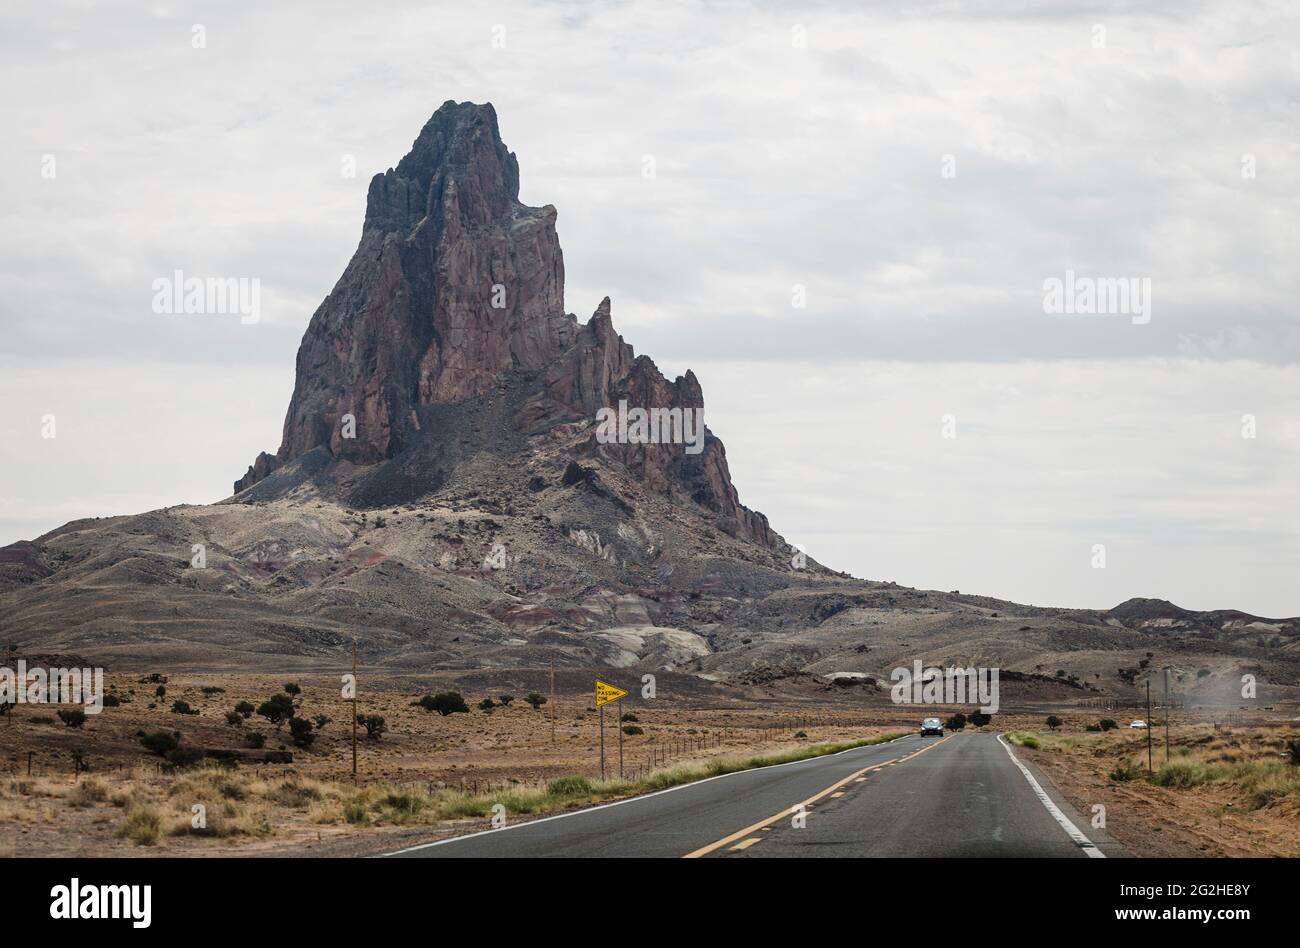 Agathla Peak oder El Capitan, nördlich von Kayenta, im Navajo Land, Northen Arizona, USA. Ein erodierter vulkanischer Stopfen südlich des Monument Valley wird von den Navajo als heilig angesehen. Stockfoto